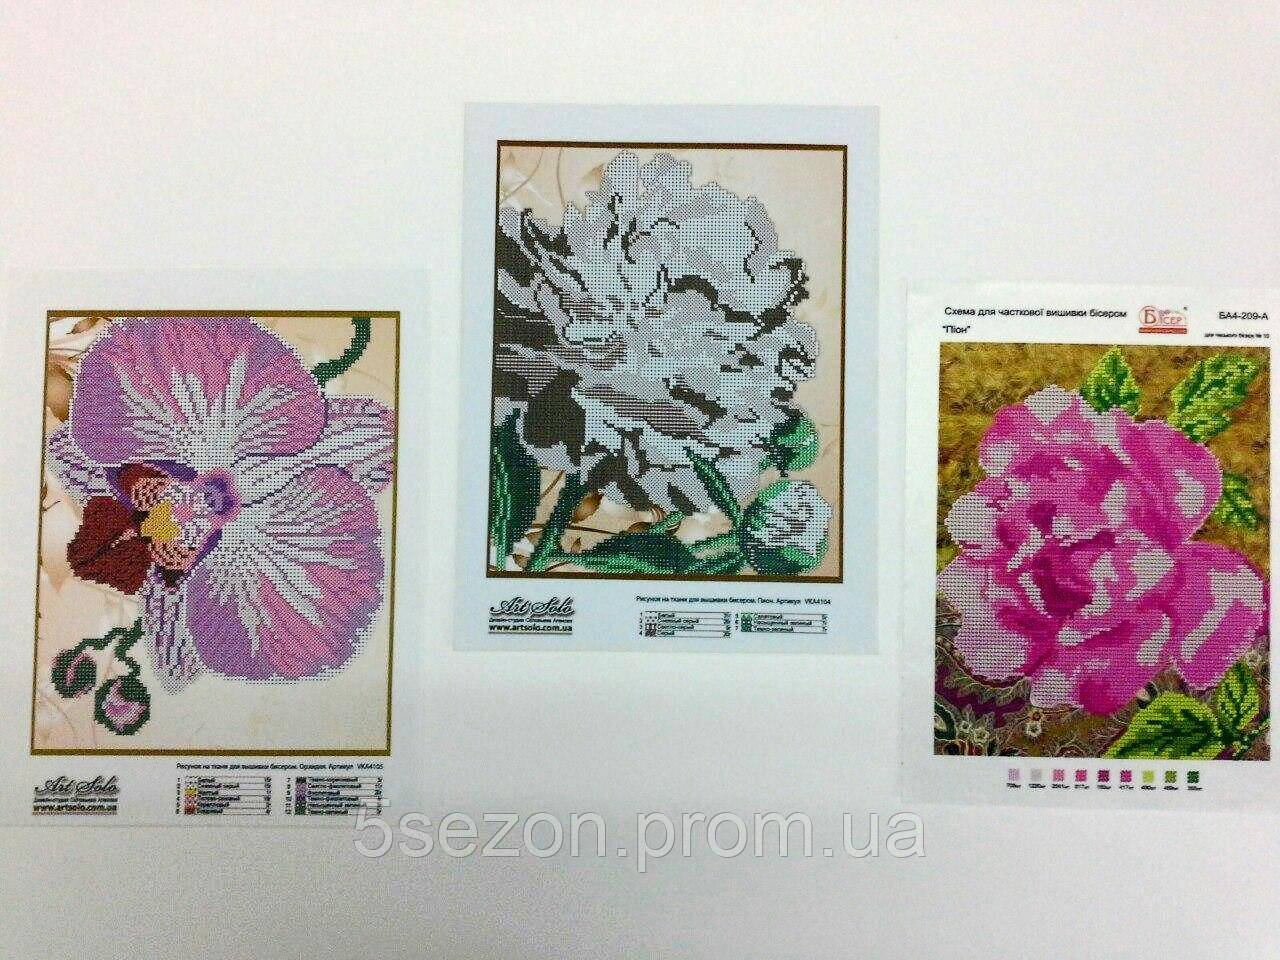 Схеми для вишивки бісером Лот №9 "Орхідея і троянди" (набір їх 3-х картин)